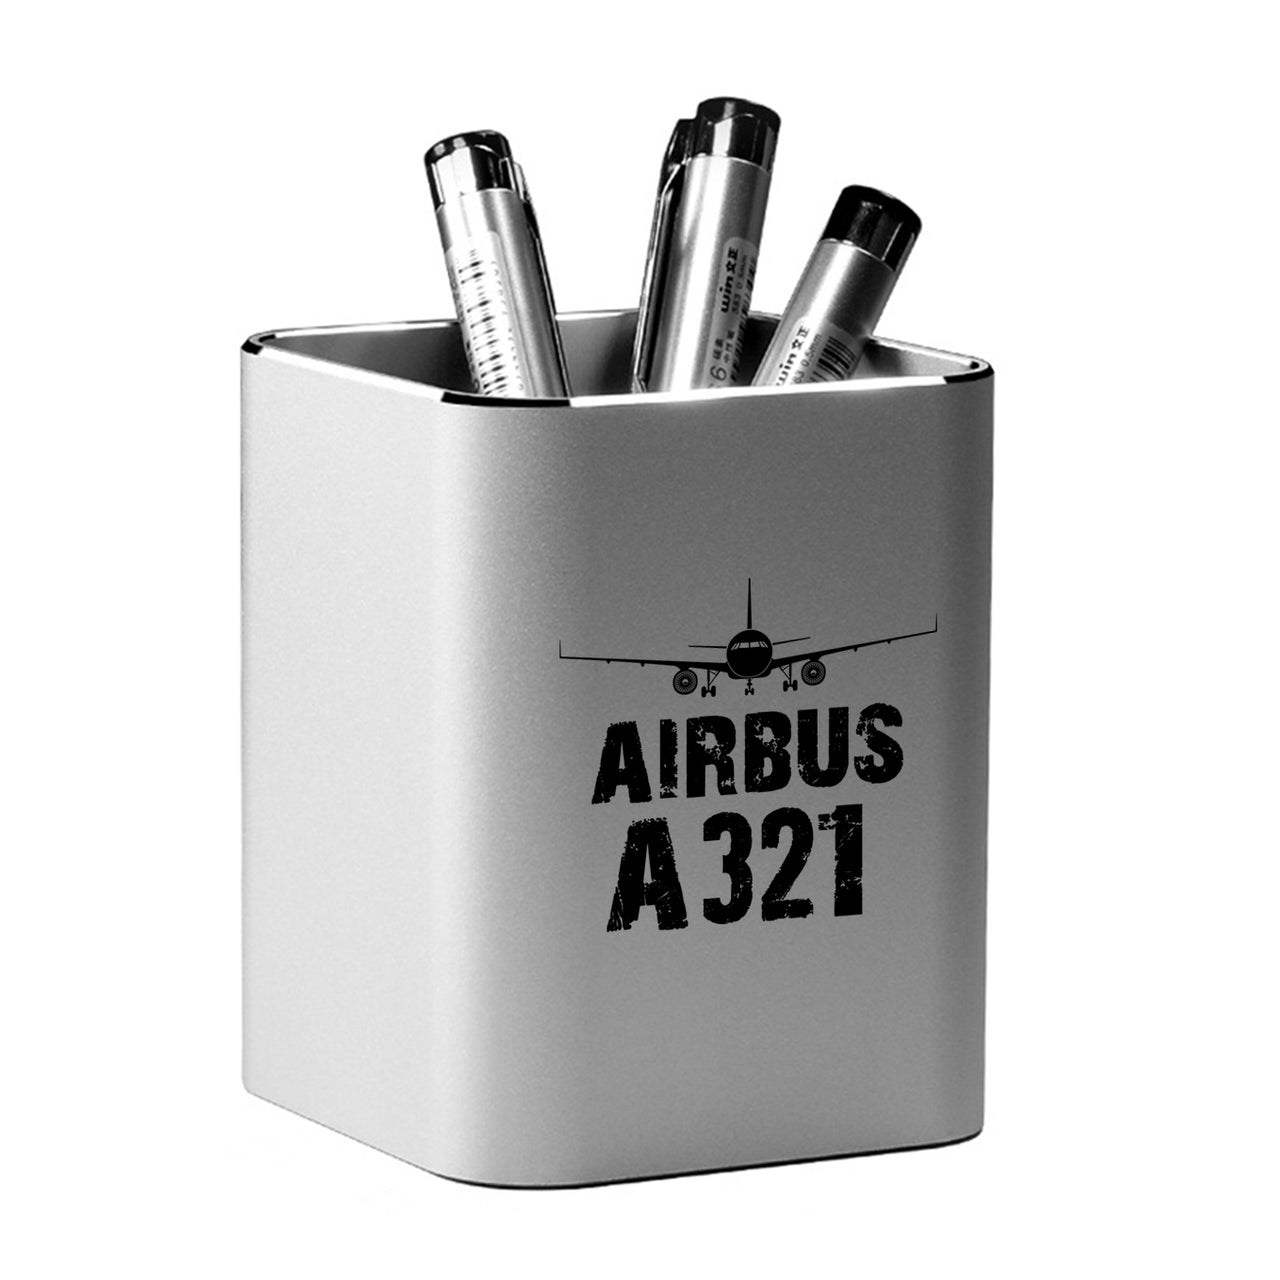 Airbus A321 & Plane Designed Aluminium Alloy Pen Holders